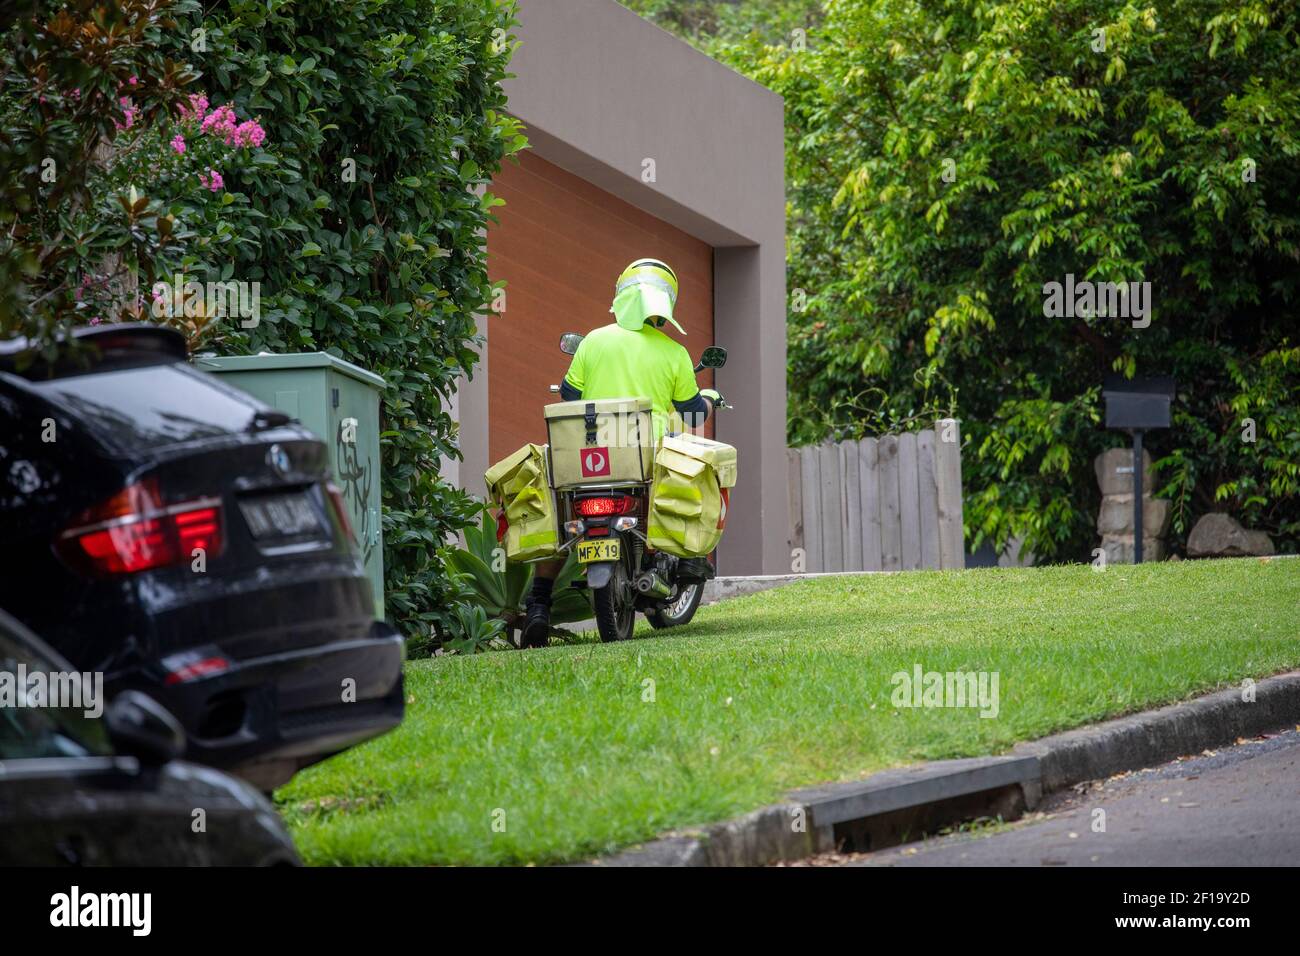 Australien Post Postzustellung Postbote Reiten Motorrad liefert Post zu Sydney Homes, NSW, Australien Stockfoto